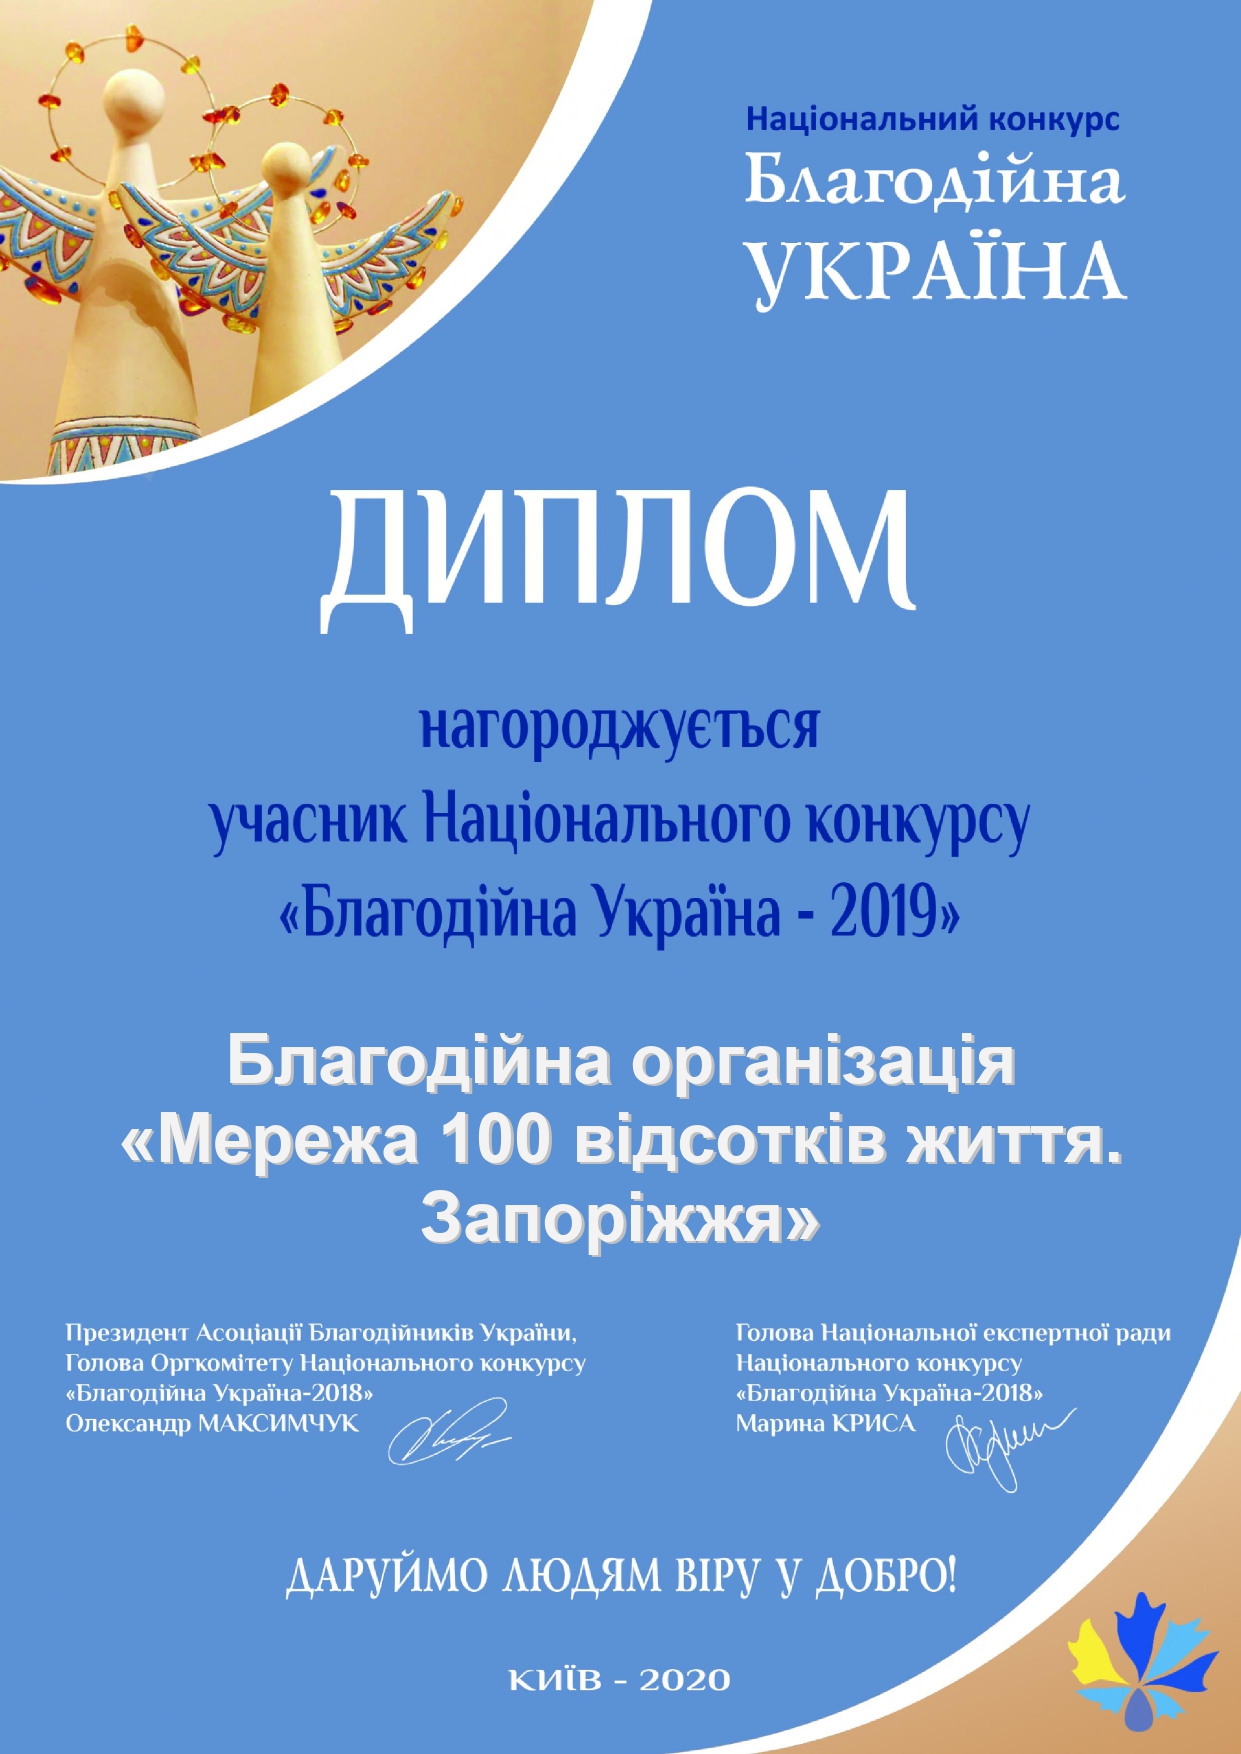 БО «Мережа 100 відсотків  життя. Запоріжжя» взяла участь в 13-му щорічному Національному конкурсі «Благодійна Україна-2019»